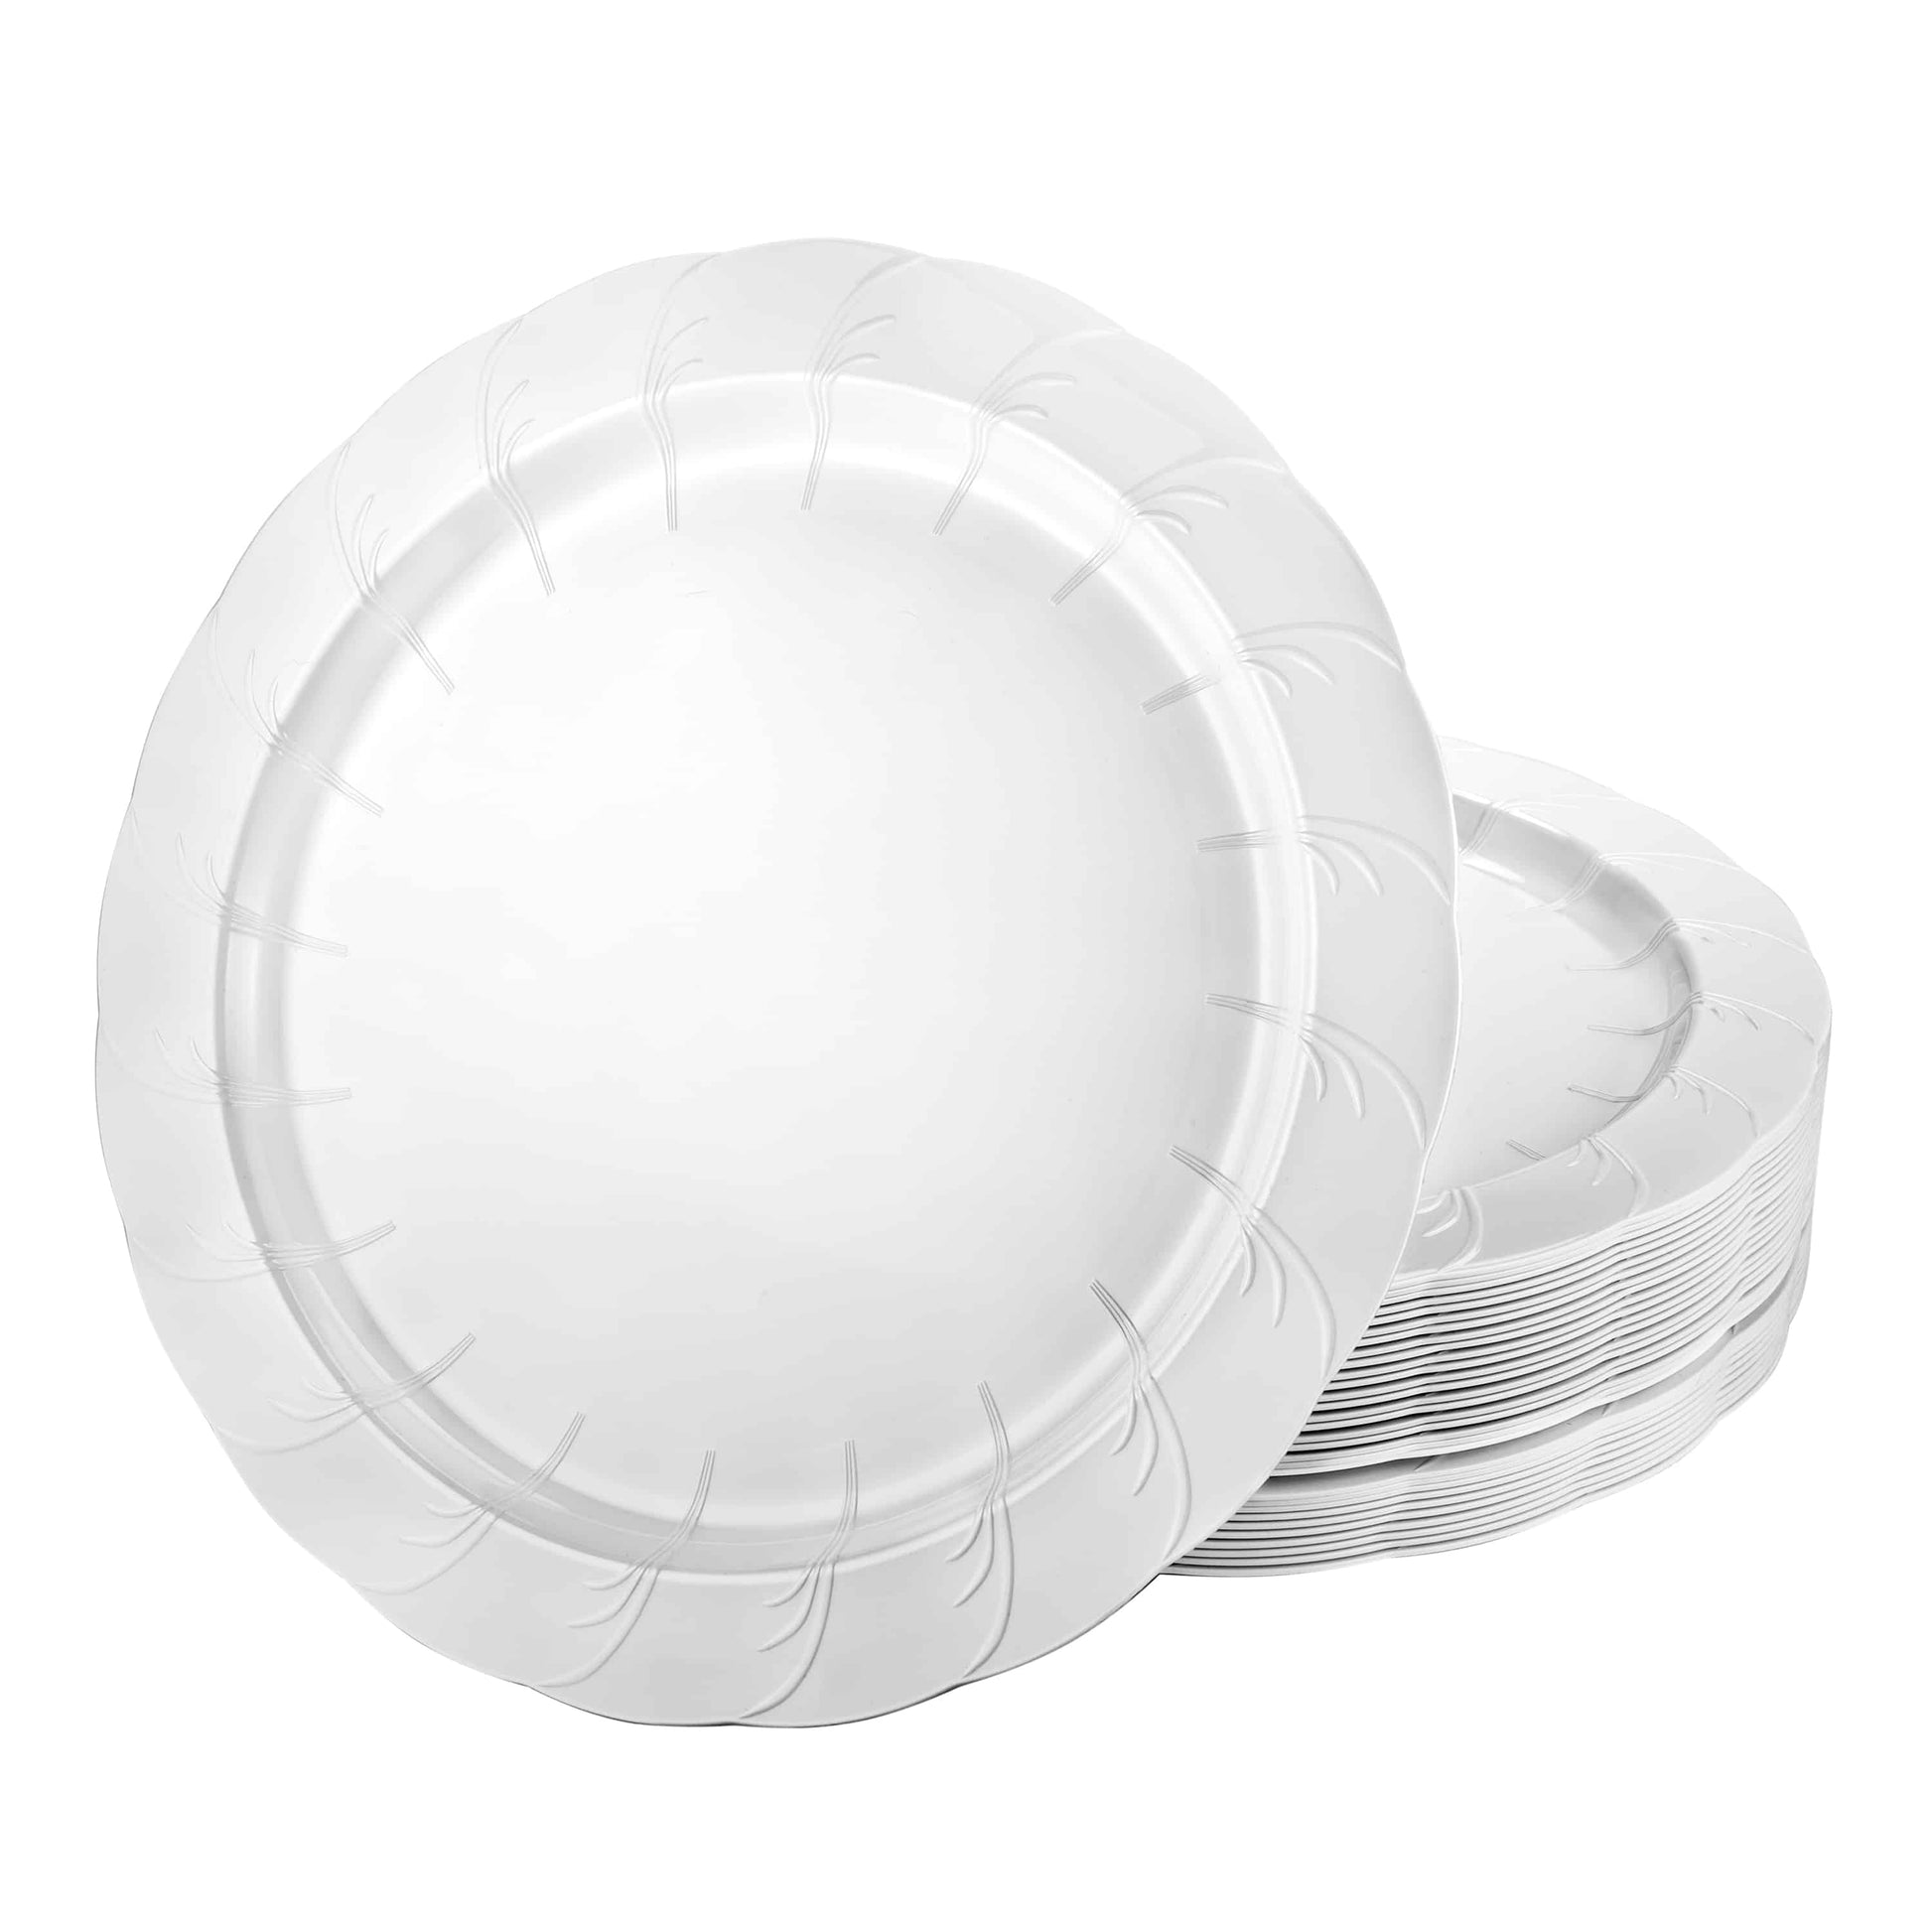 Elegance Premium Plastic Round Dinner Plates